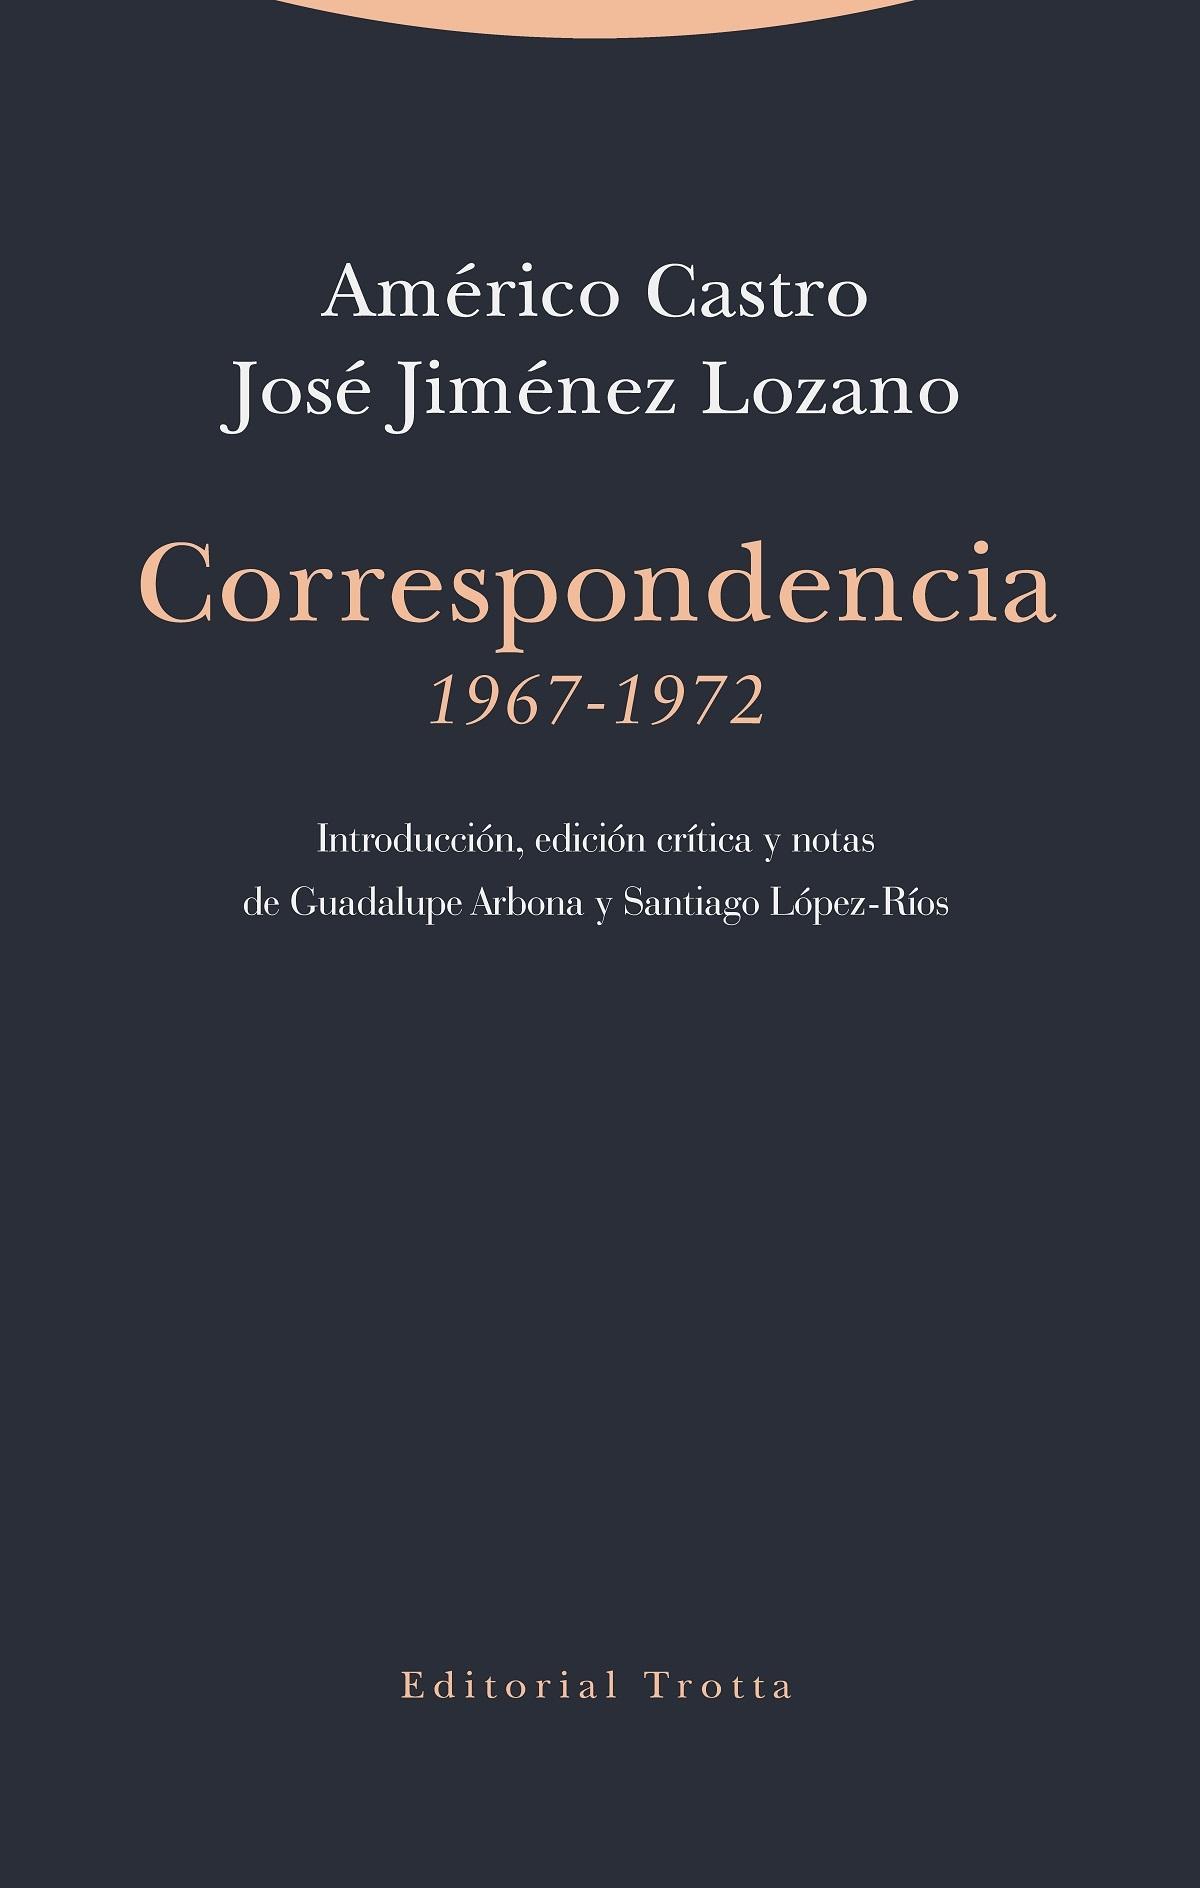 Correspondencia (1967-1972) "Entre Américo Castro y José Jiménez Lozano"